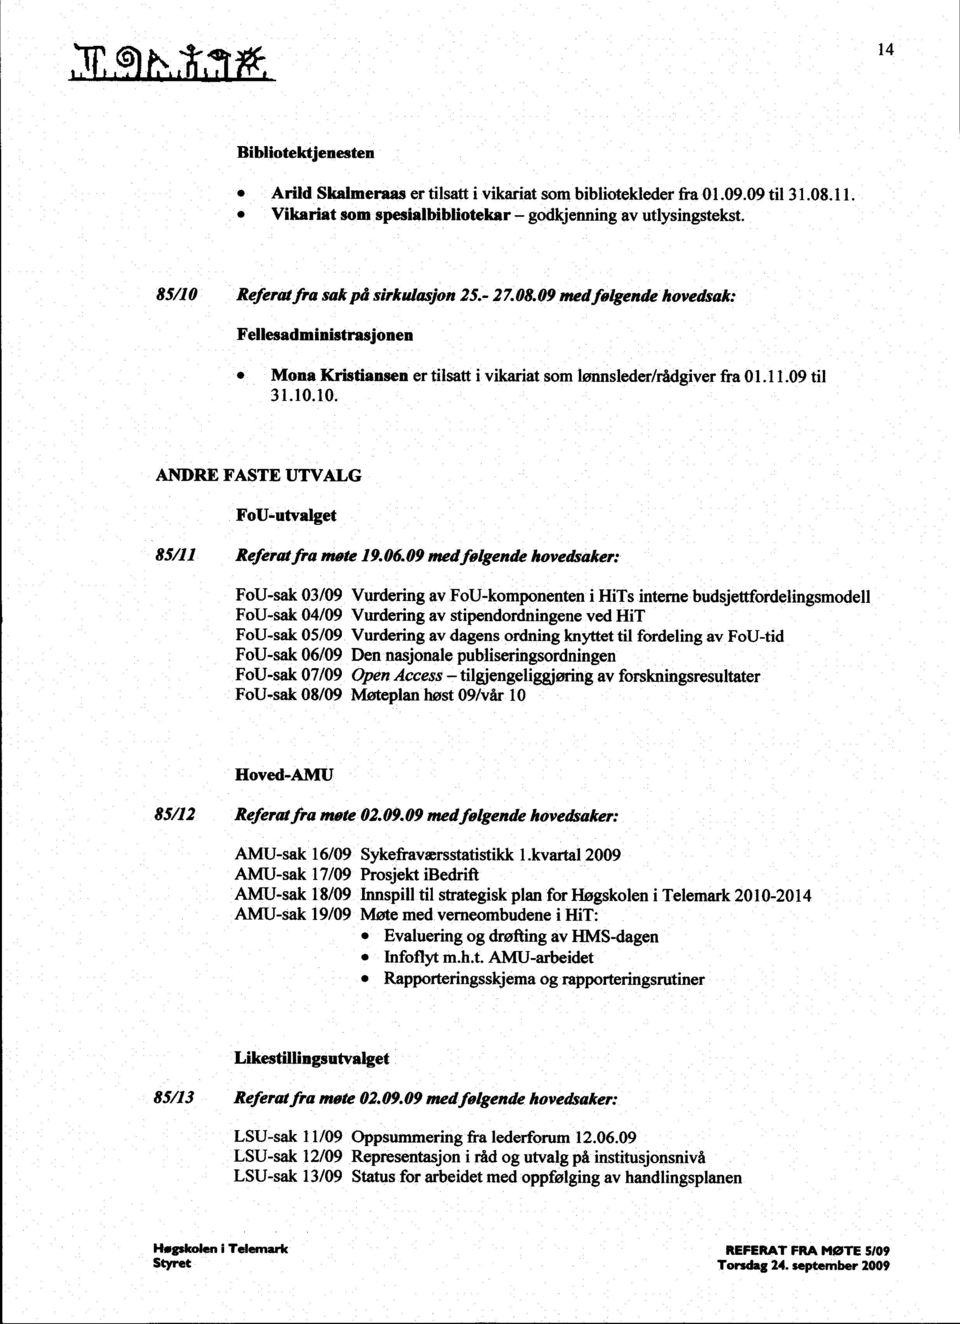 06 09 medfølgende hovedsaker: FoU-sak 03/09 Vurdering av FoU-komponenten i HiTs interne budsjettfordelingsmodell FoU-sak 04/09 Vurdering av stipendordningene ved HiT FoU-sak 05/09 Vurdering av dagens